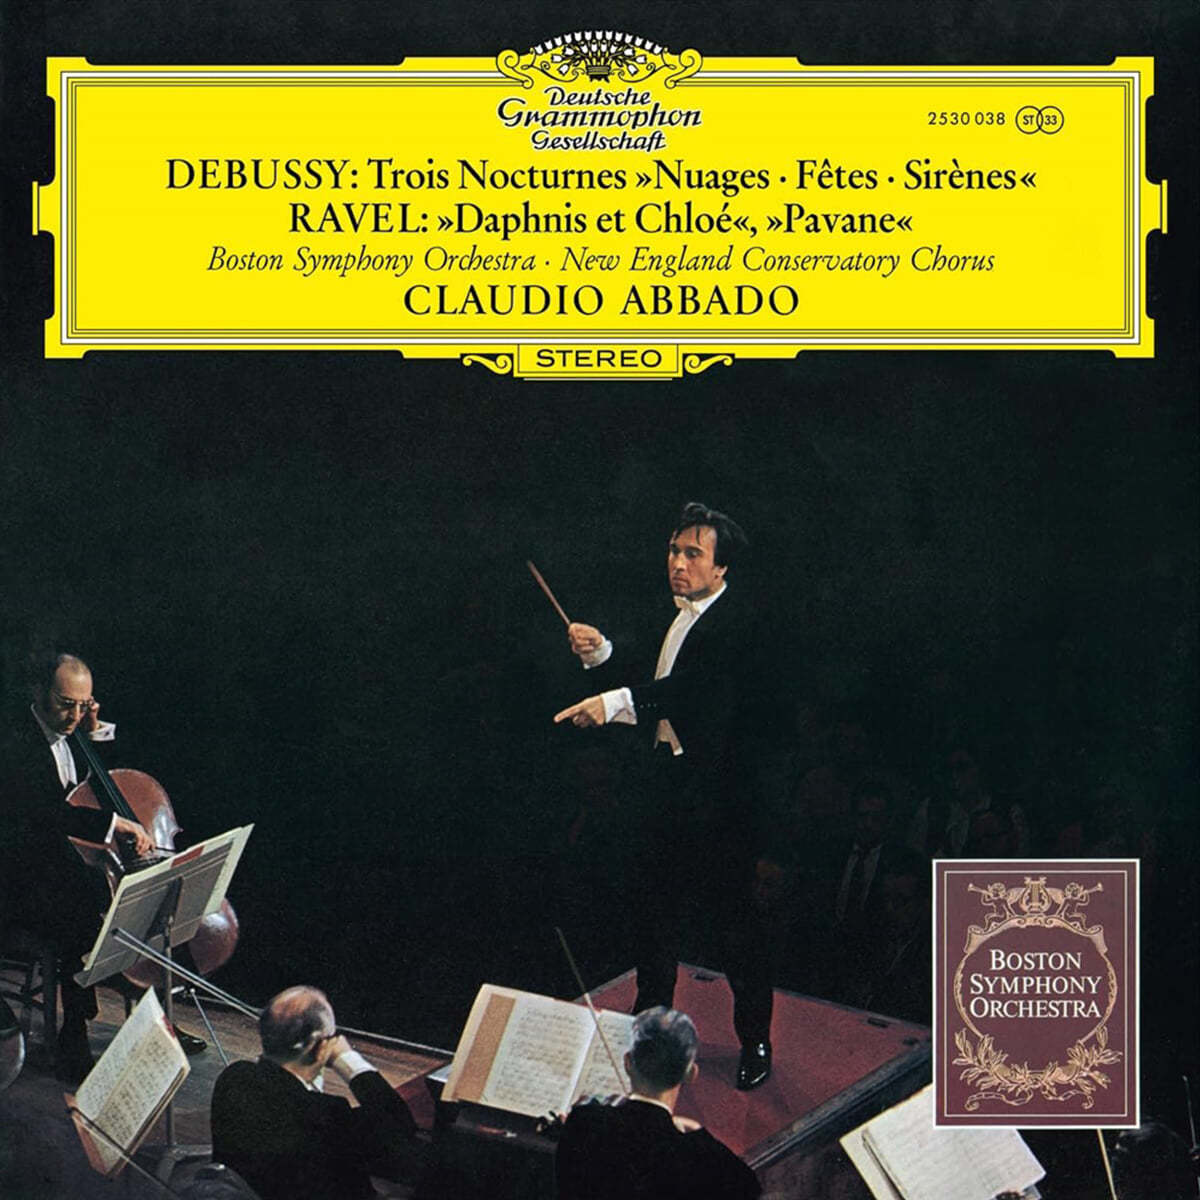 Claudio Abbado 드뷔시: 녹턴 / 라벨: 죽은 왕녀를 위한 파반느 (Debussy: Nocturnes / Ravel: Daphnis et Chloe Suite No. 2) [LP]